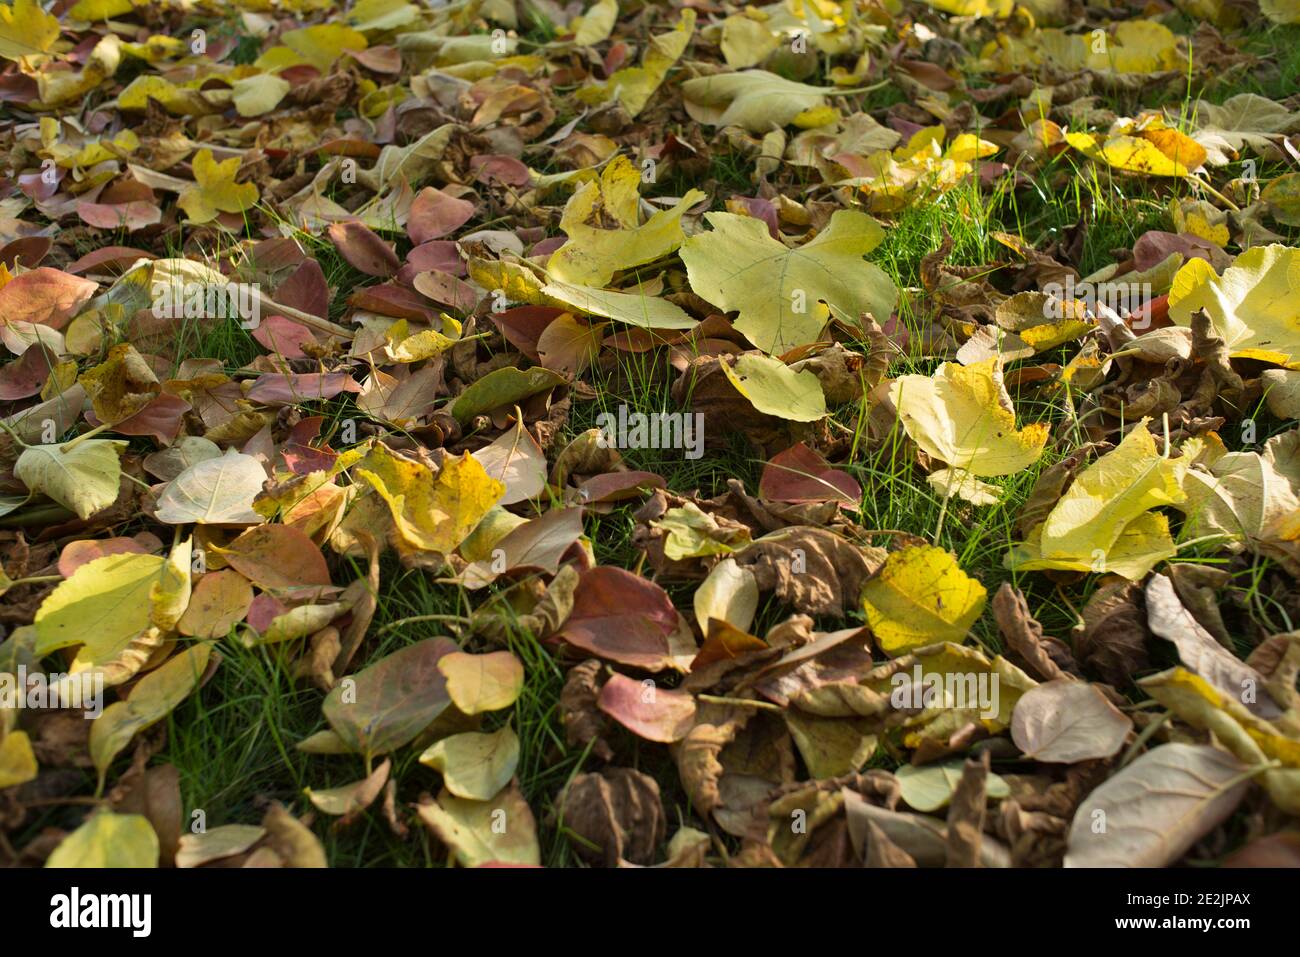 Autumn foliage, Italy Stock Photo